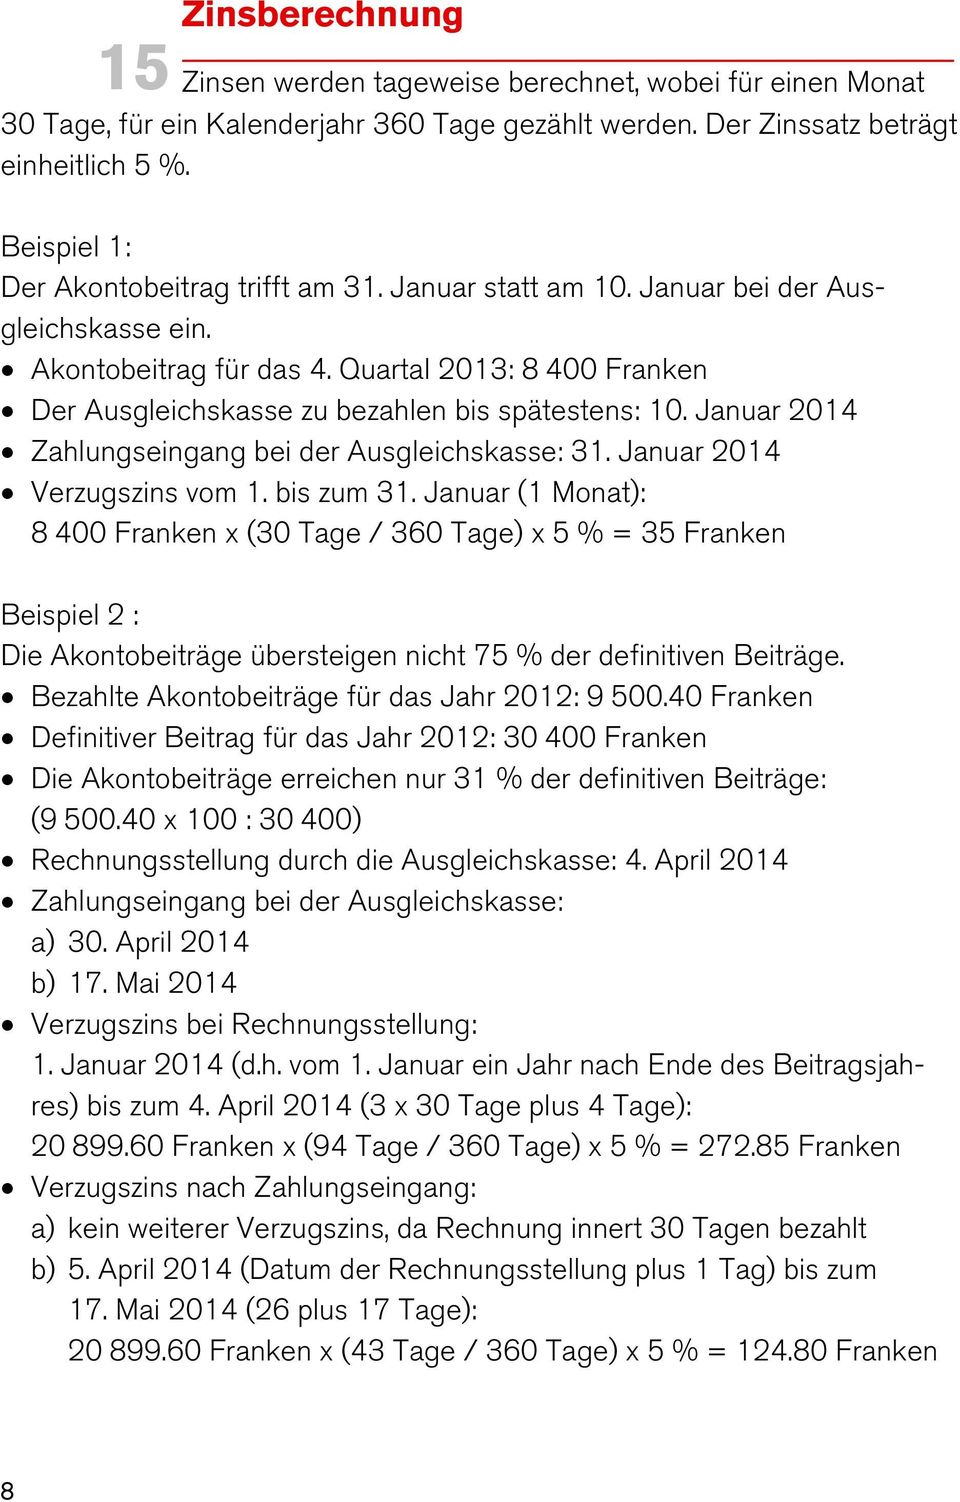 Quartal 2013: 8 400 Franken Der Ausgleichskasse zu bezahlen bis spätestens: 10. Januar 2014 Zahlungseingang bei der Ausgleichskasse: 31. Januar 2014 Verzugszins vom 1. bis zum 31.